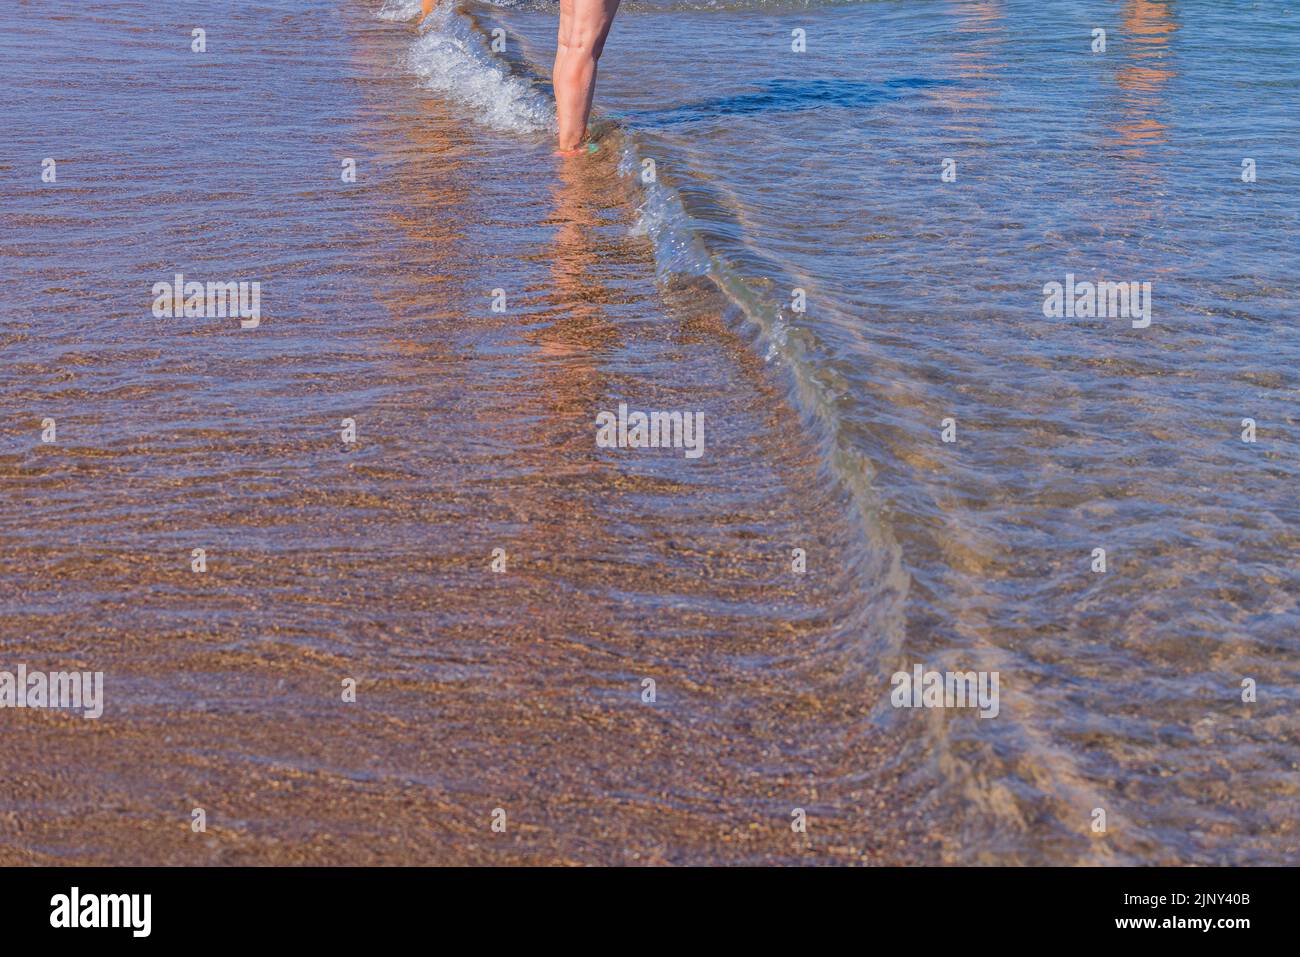 Blick auf die Beine eines Mannes, der vom Ufer des Sandstrandes ins Meer eindringt. Griechenland. Stockfoto